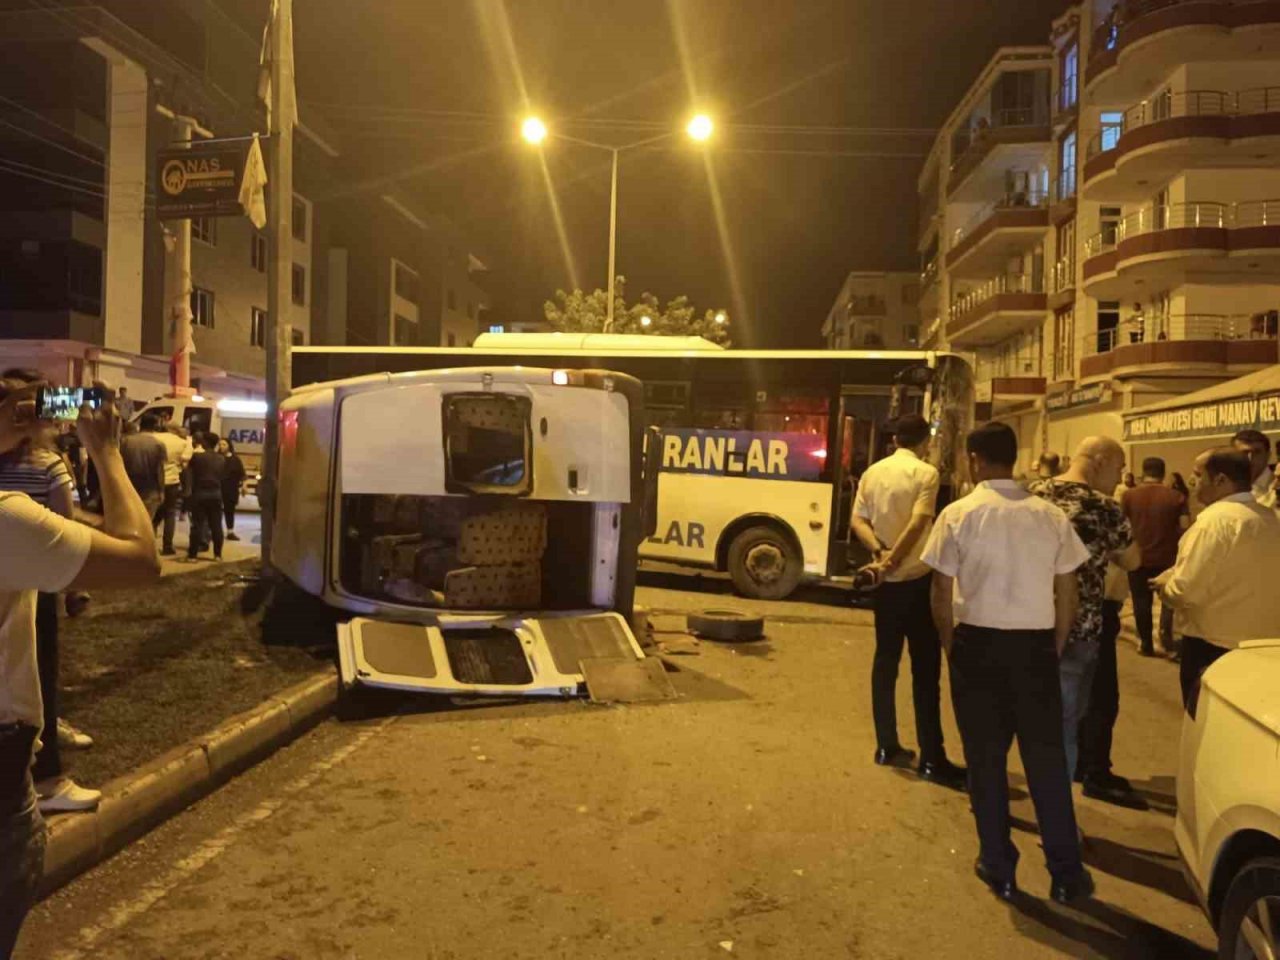 Batman’da belediye otobüsü ve minibüs çarpıştı: 8 yaralı